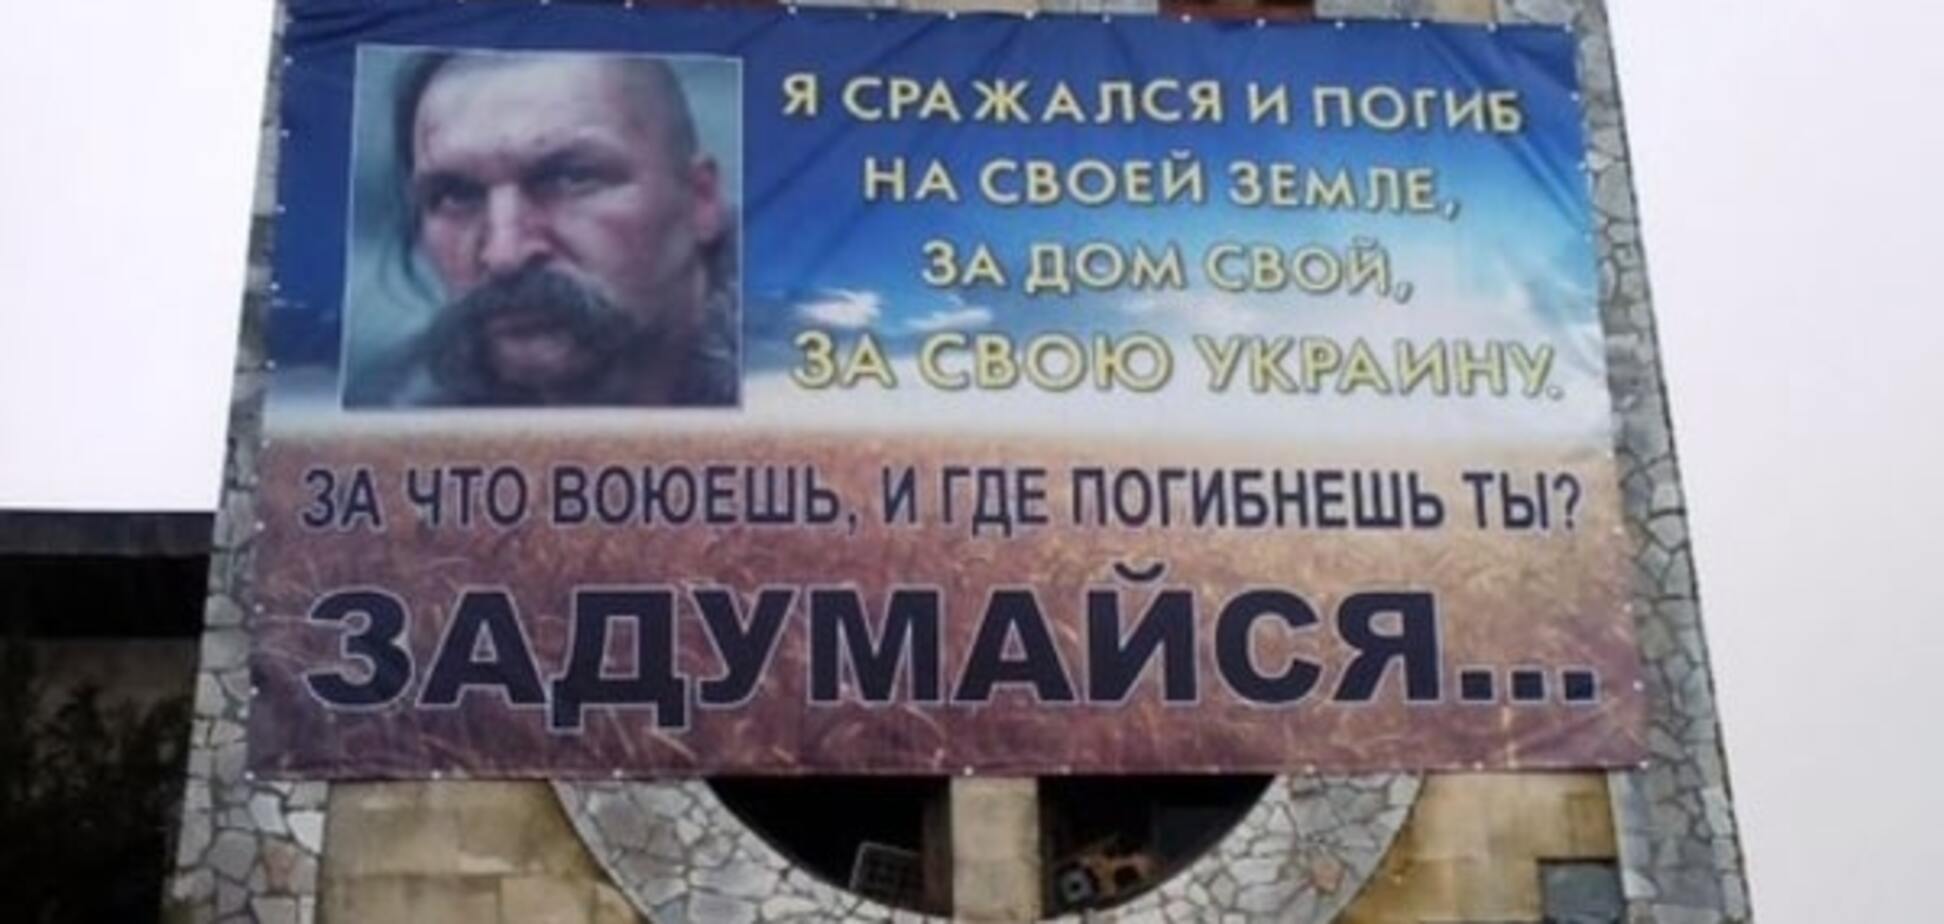 'Мы на своей земле': украинцы обратились к российским военнослужащим